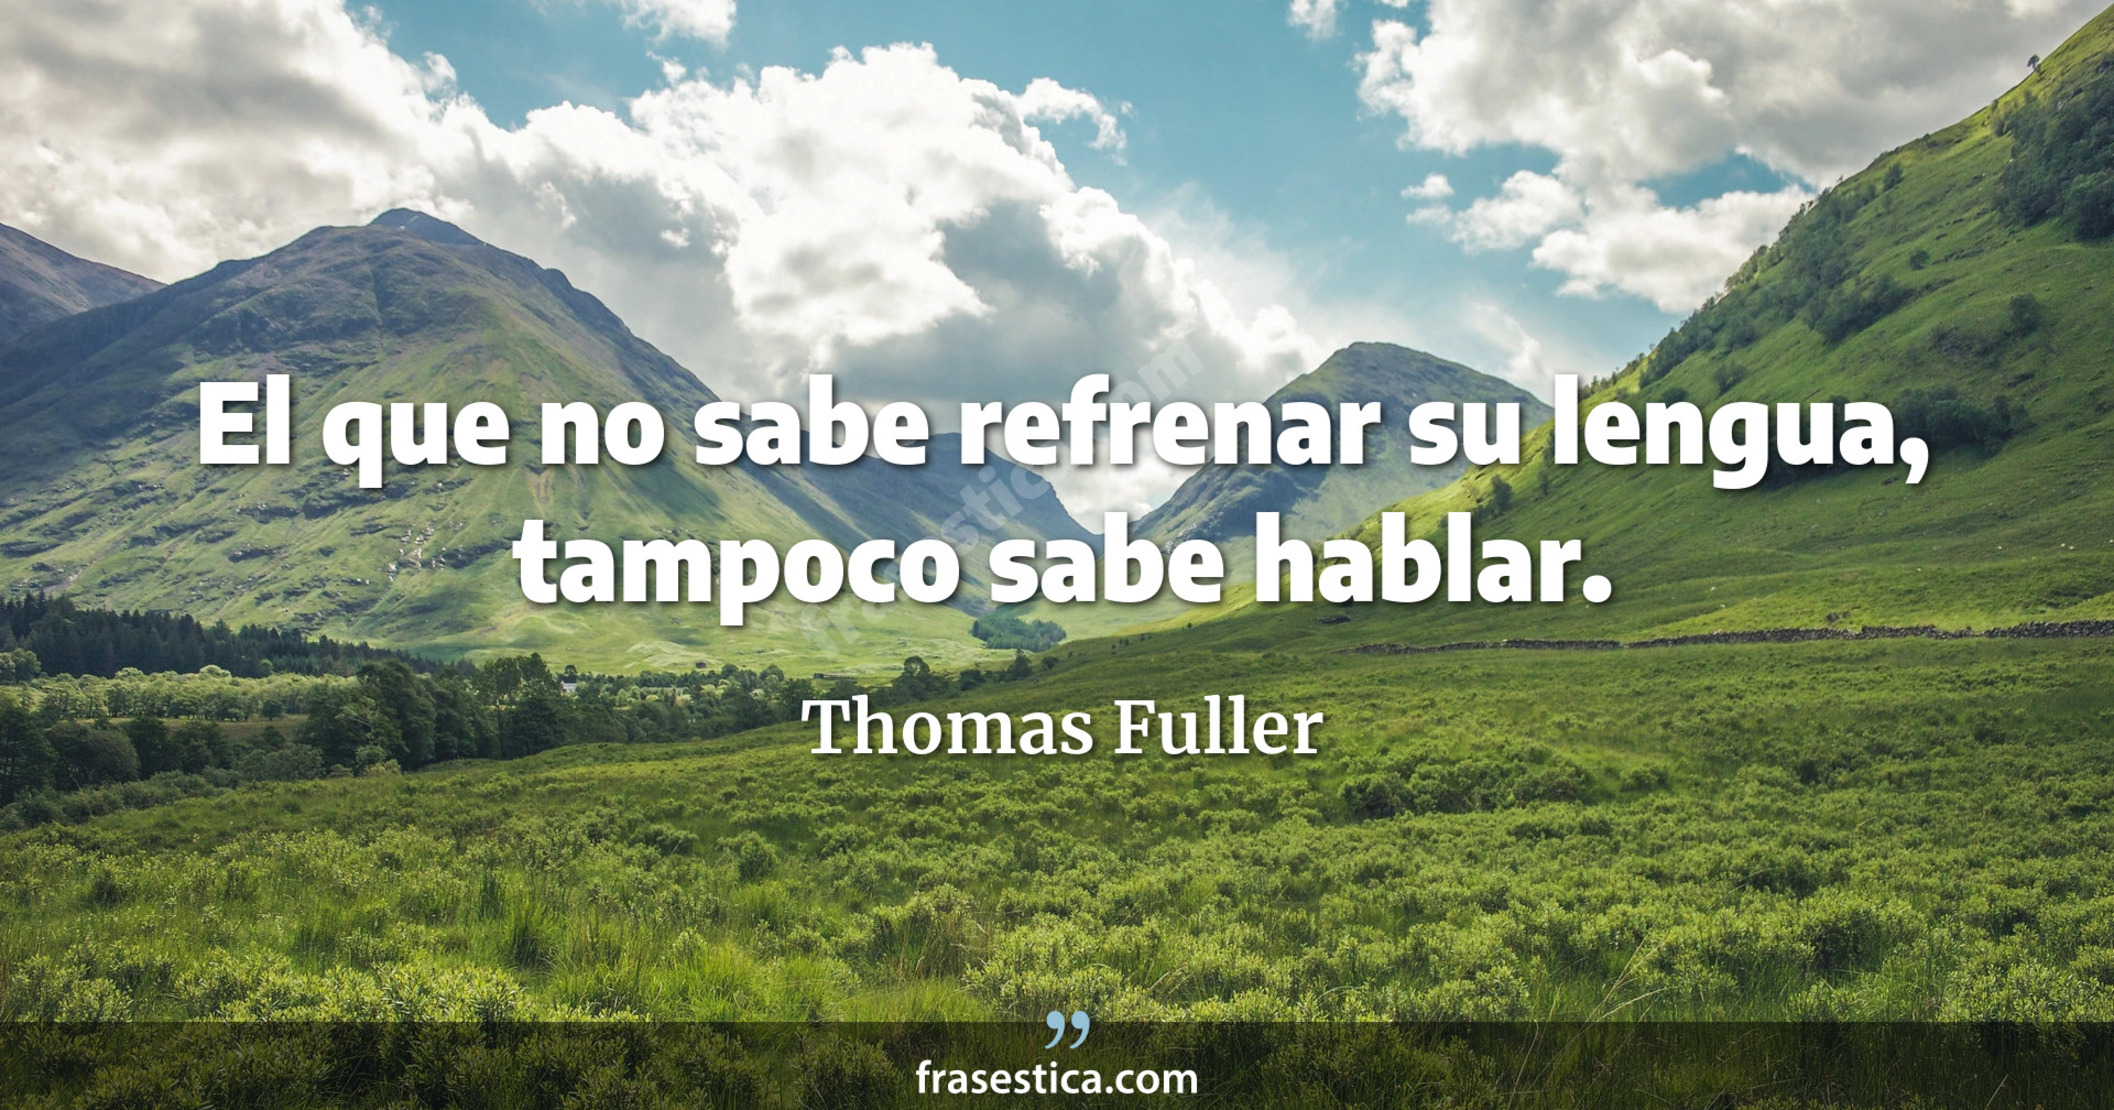 El que no sabe refrenar su lengua, tampoco sabe hablar. - Thomas Fuller